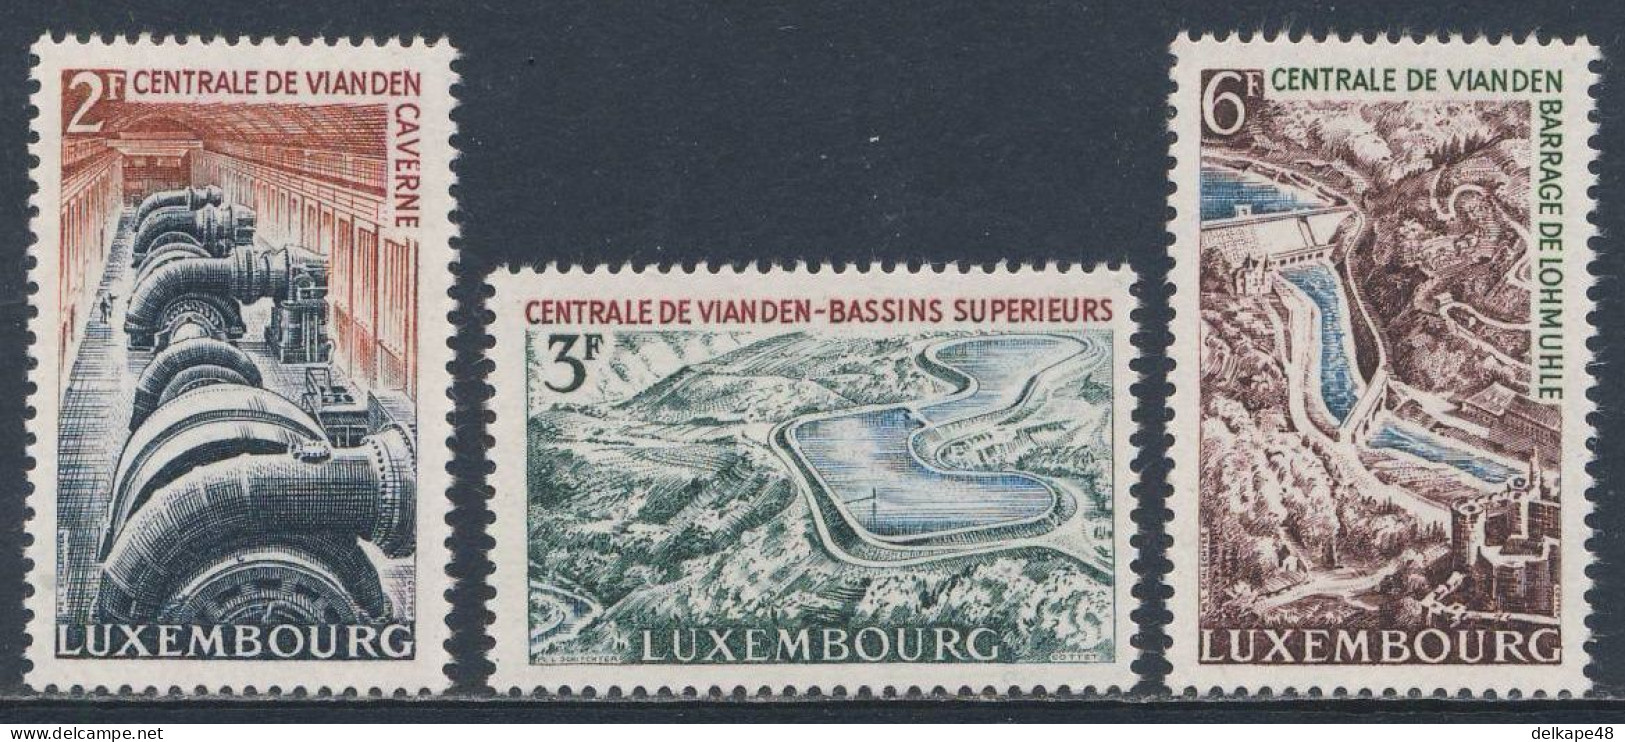 Luxemburg Luxembourg 1964 Mi 693 /5 YT 644 /6 SG 740 /2 ** Inaug. Vianden Reservoir / Pumpspeicherwerkes Vianden - Water